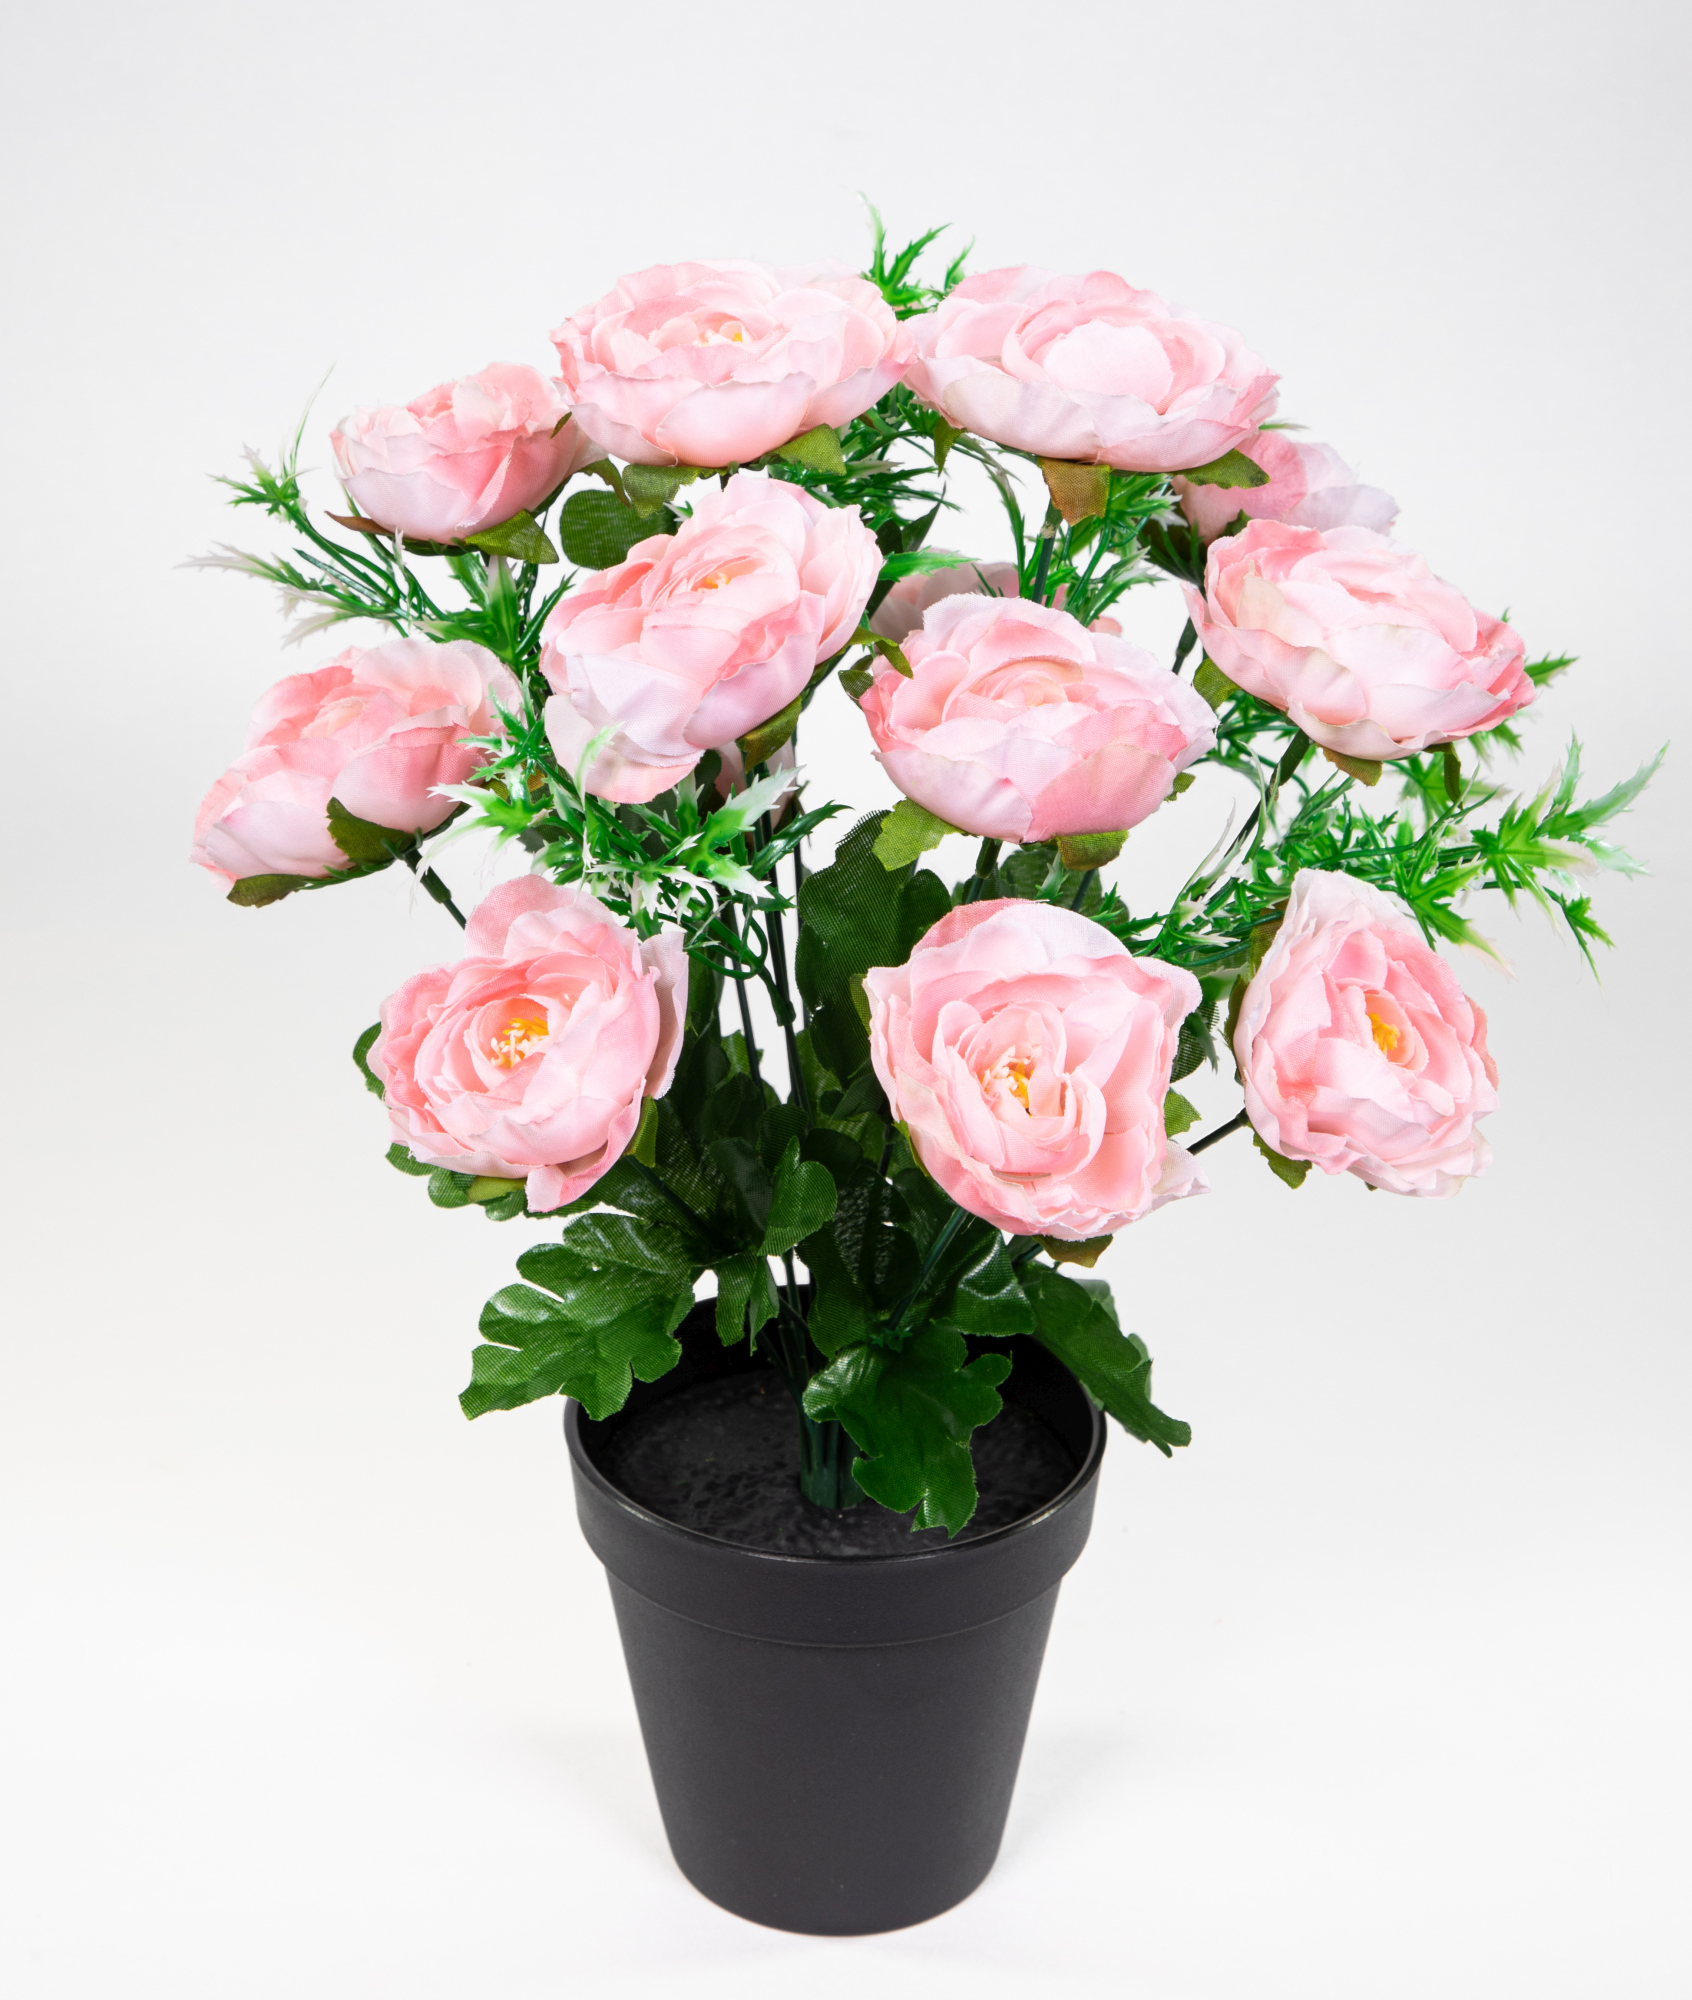 Ranunkelbusch 34cm rosa im Topf JA Kunstpflanzen Kunstblumen künstliche Ranunkel Blumen